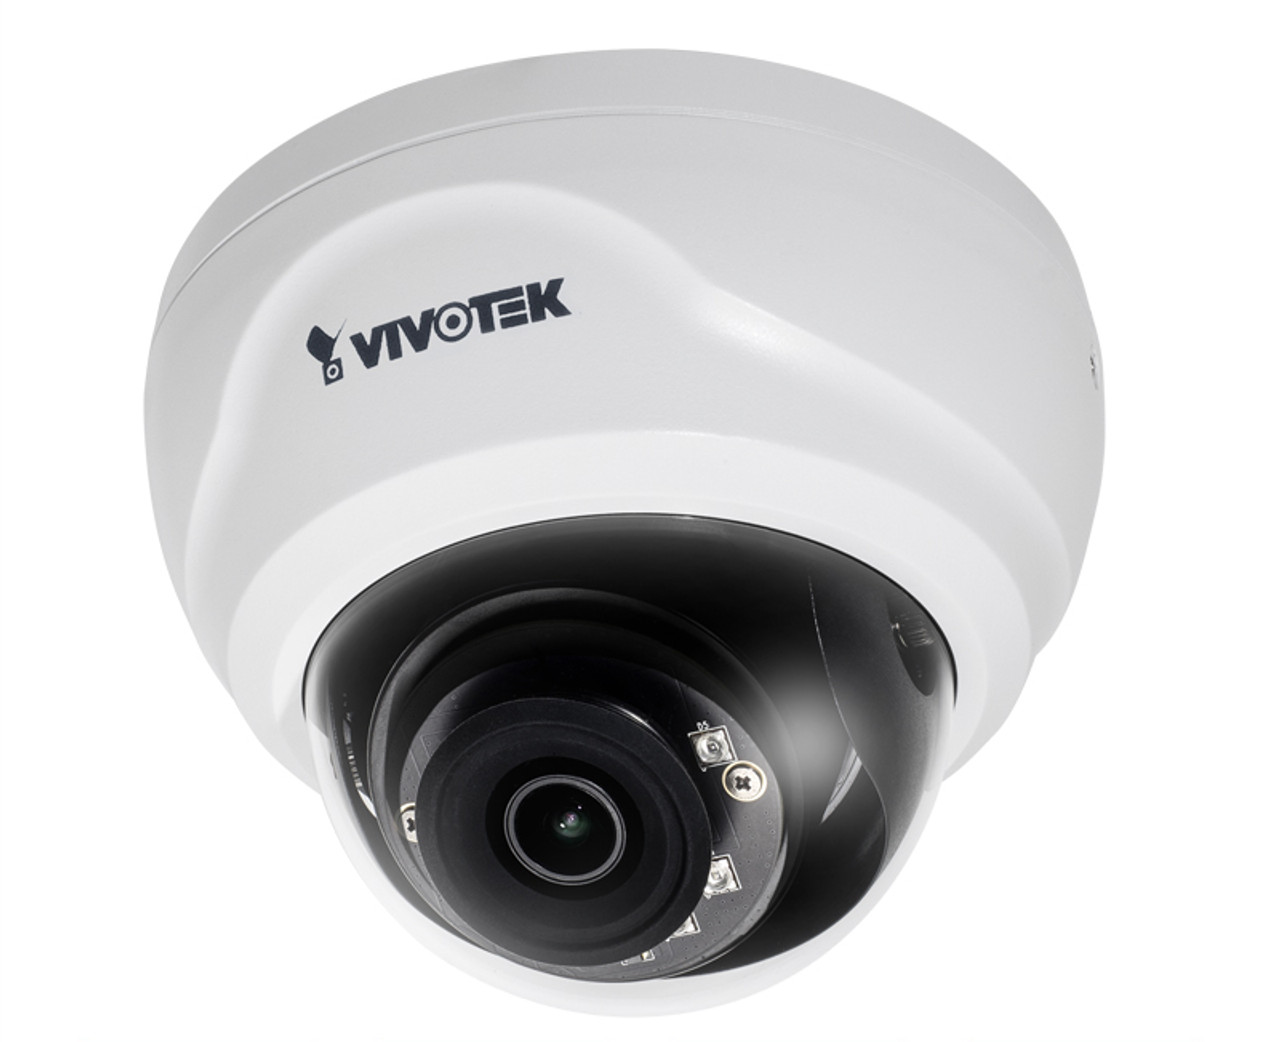 Vivotek FD8169 Indoor Dome IP Security Camera